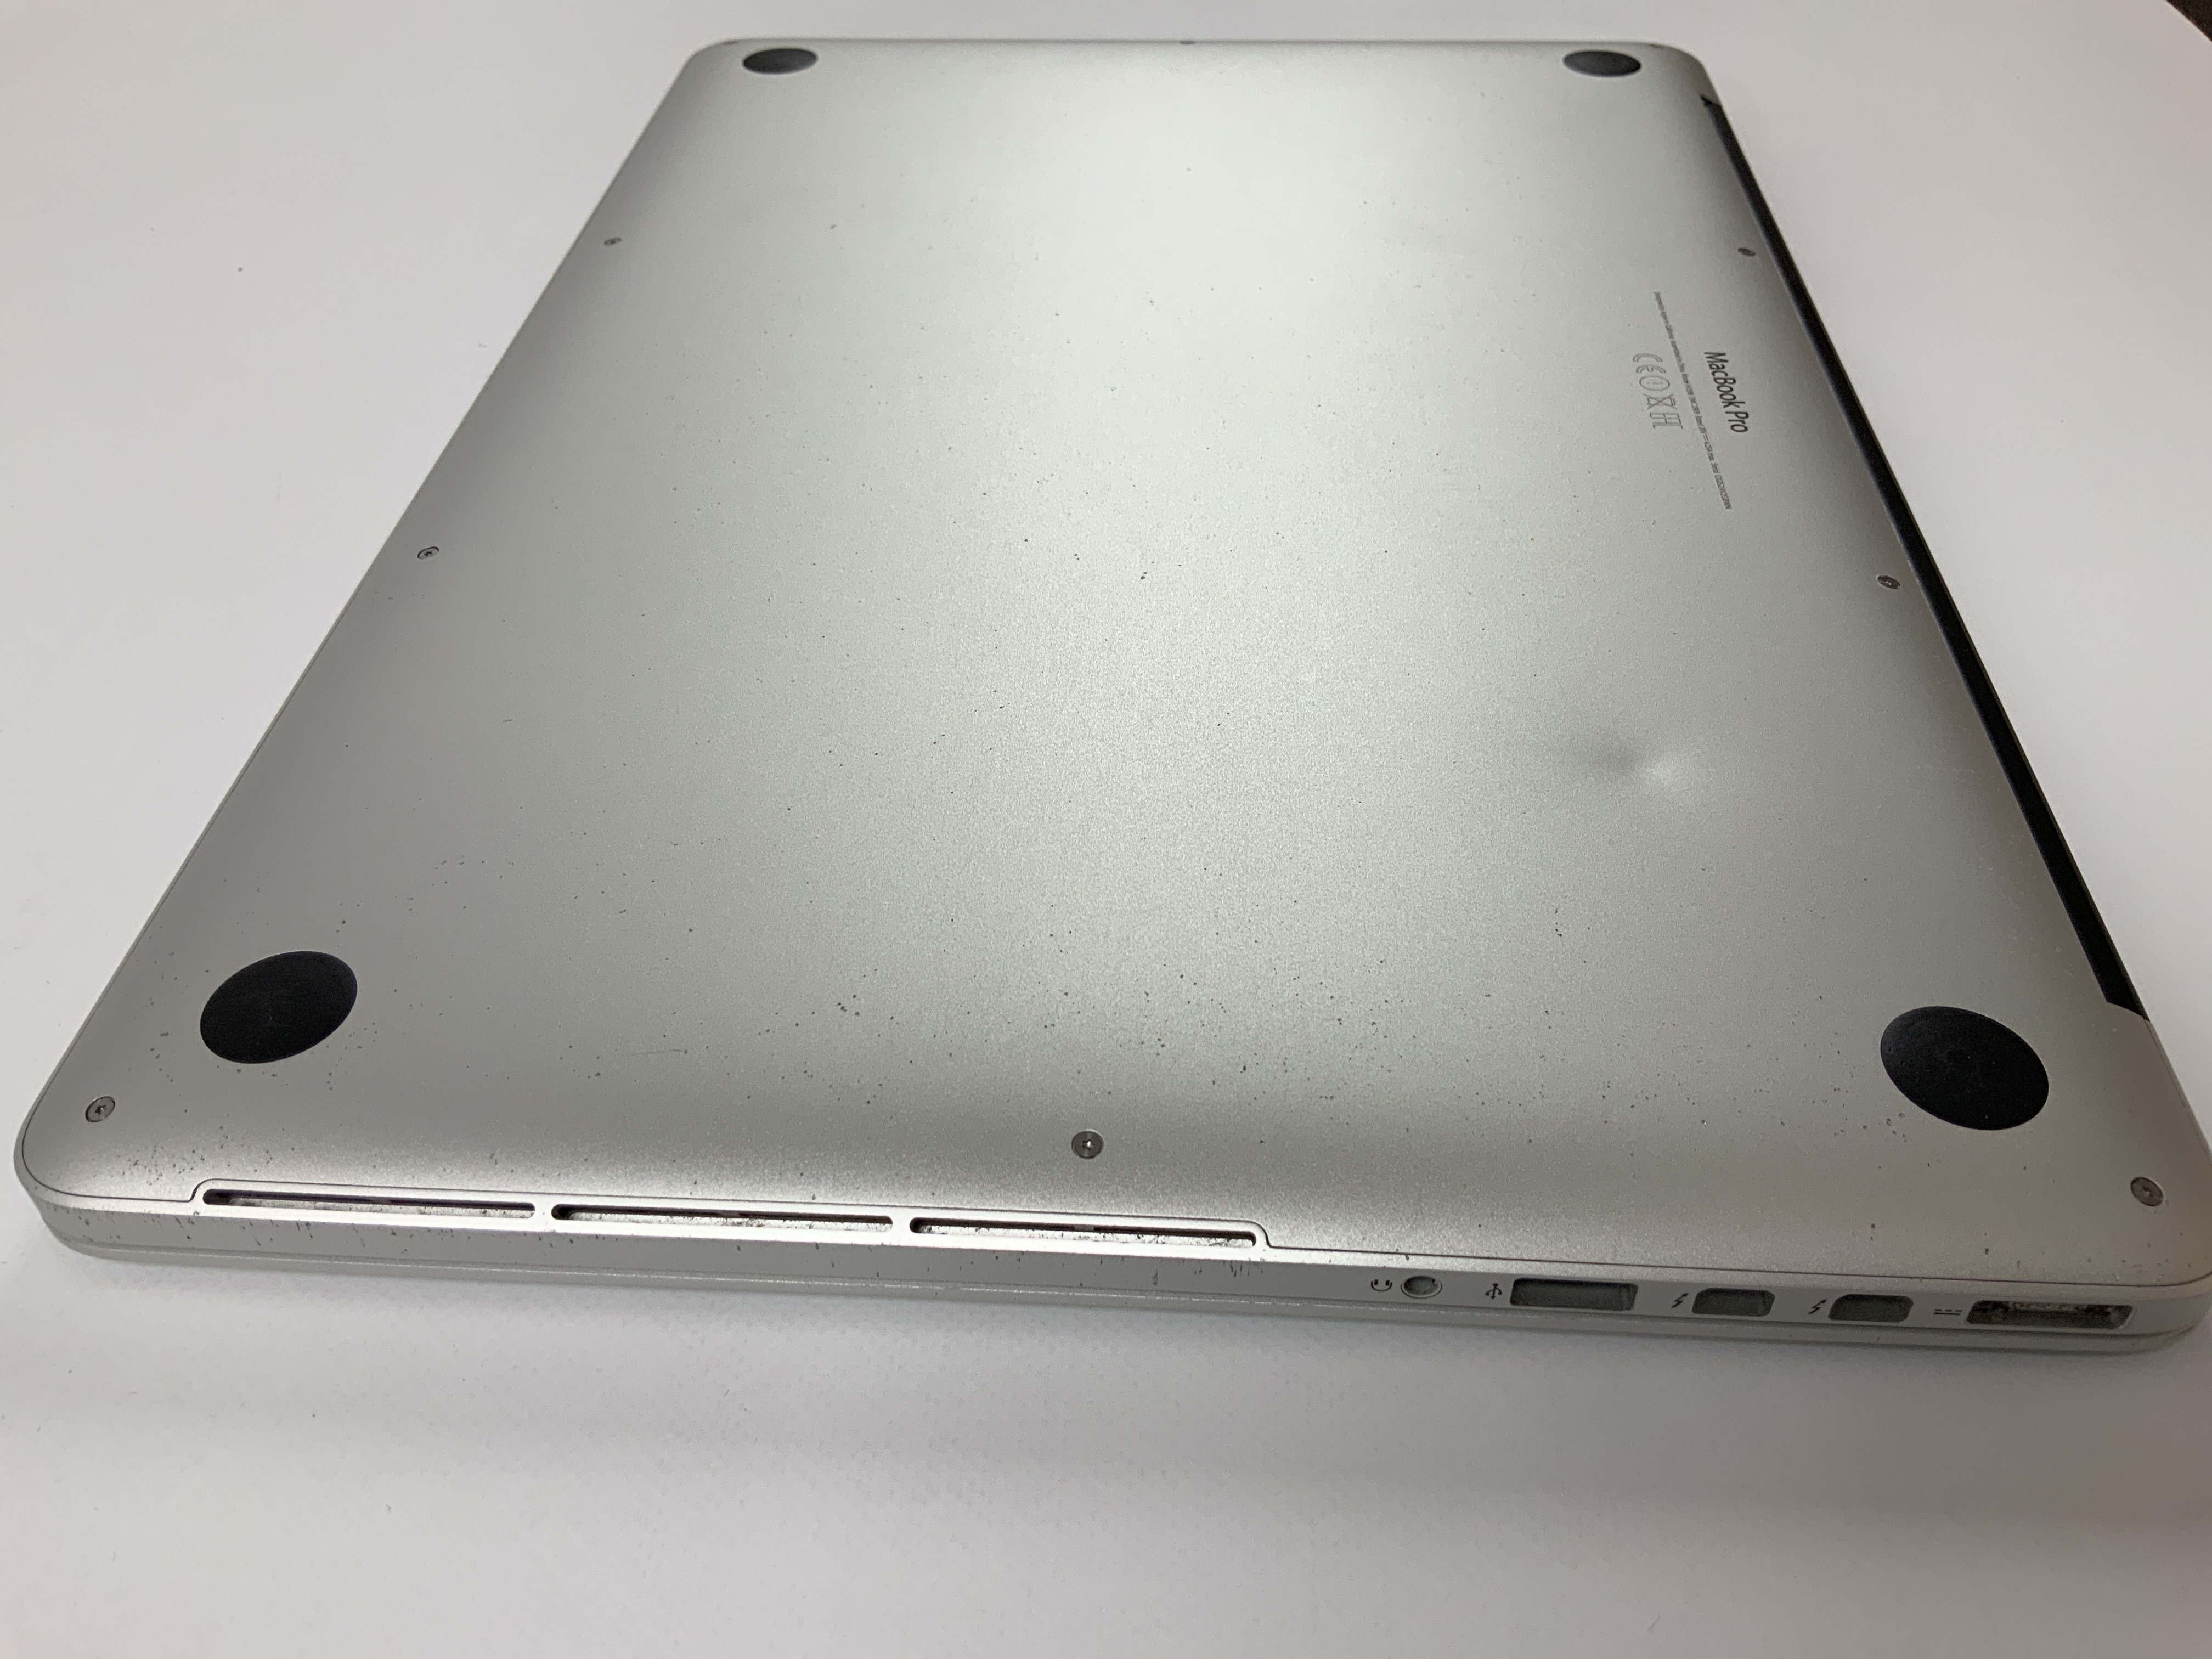 MacBook Pro Retina 15" Mid 2015 (Intel Quad-Core i7 2.5 GHz 16 GB RAM 256 GB SSD), Intel Quad-Core i7 2.5 GHz, 16 GB RAM, 256 GB SSD, Kuva 5